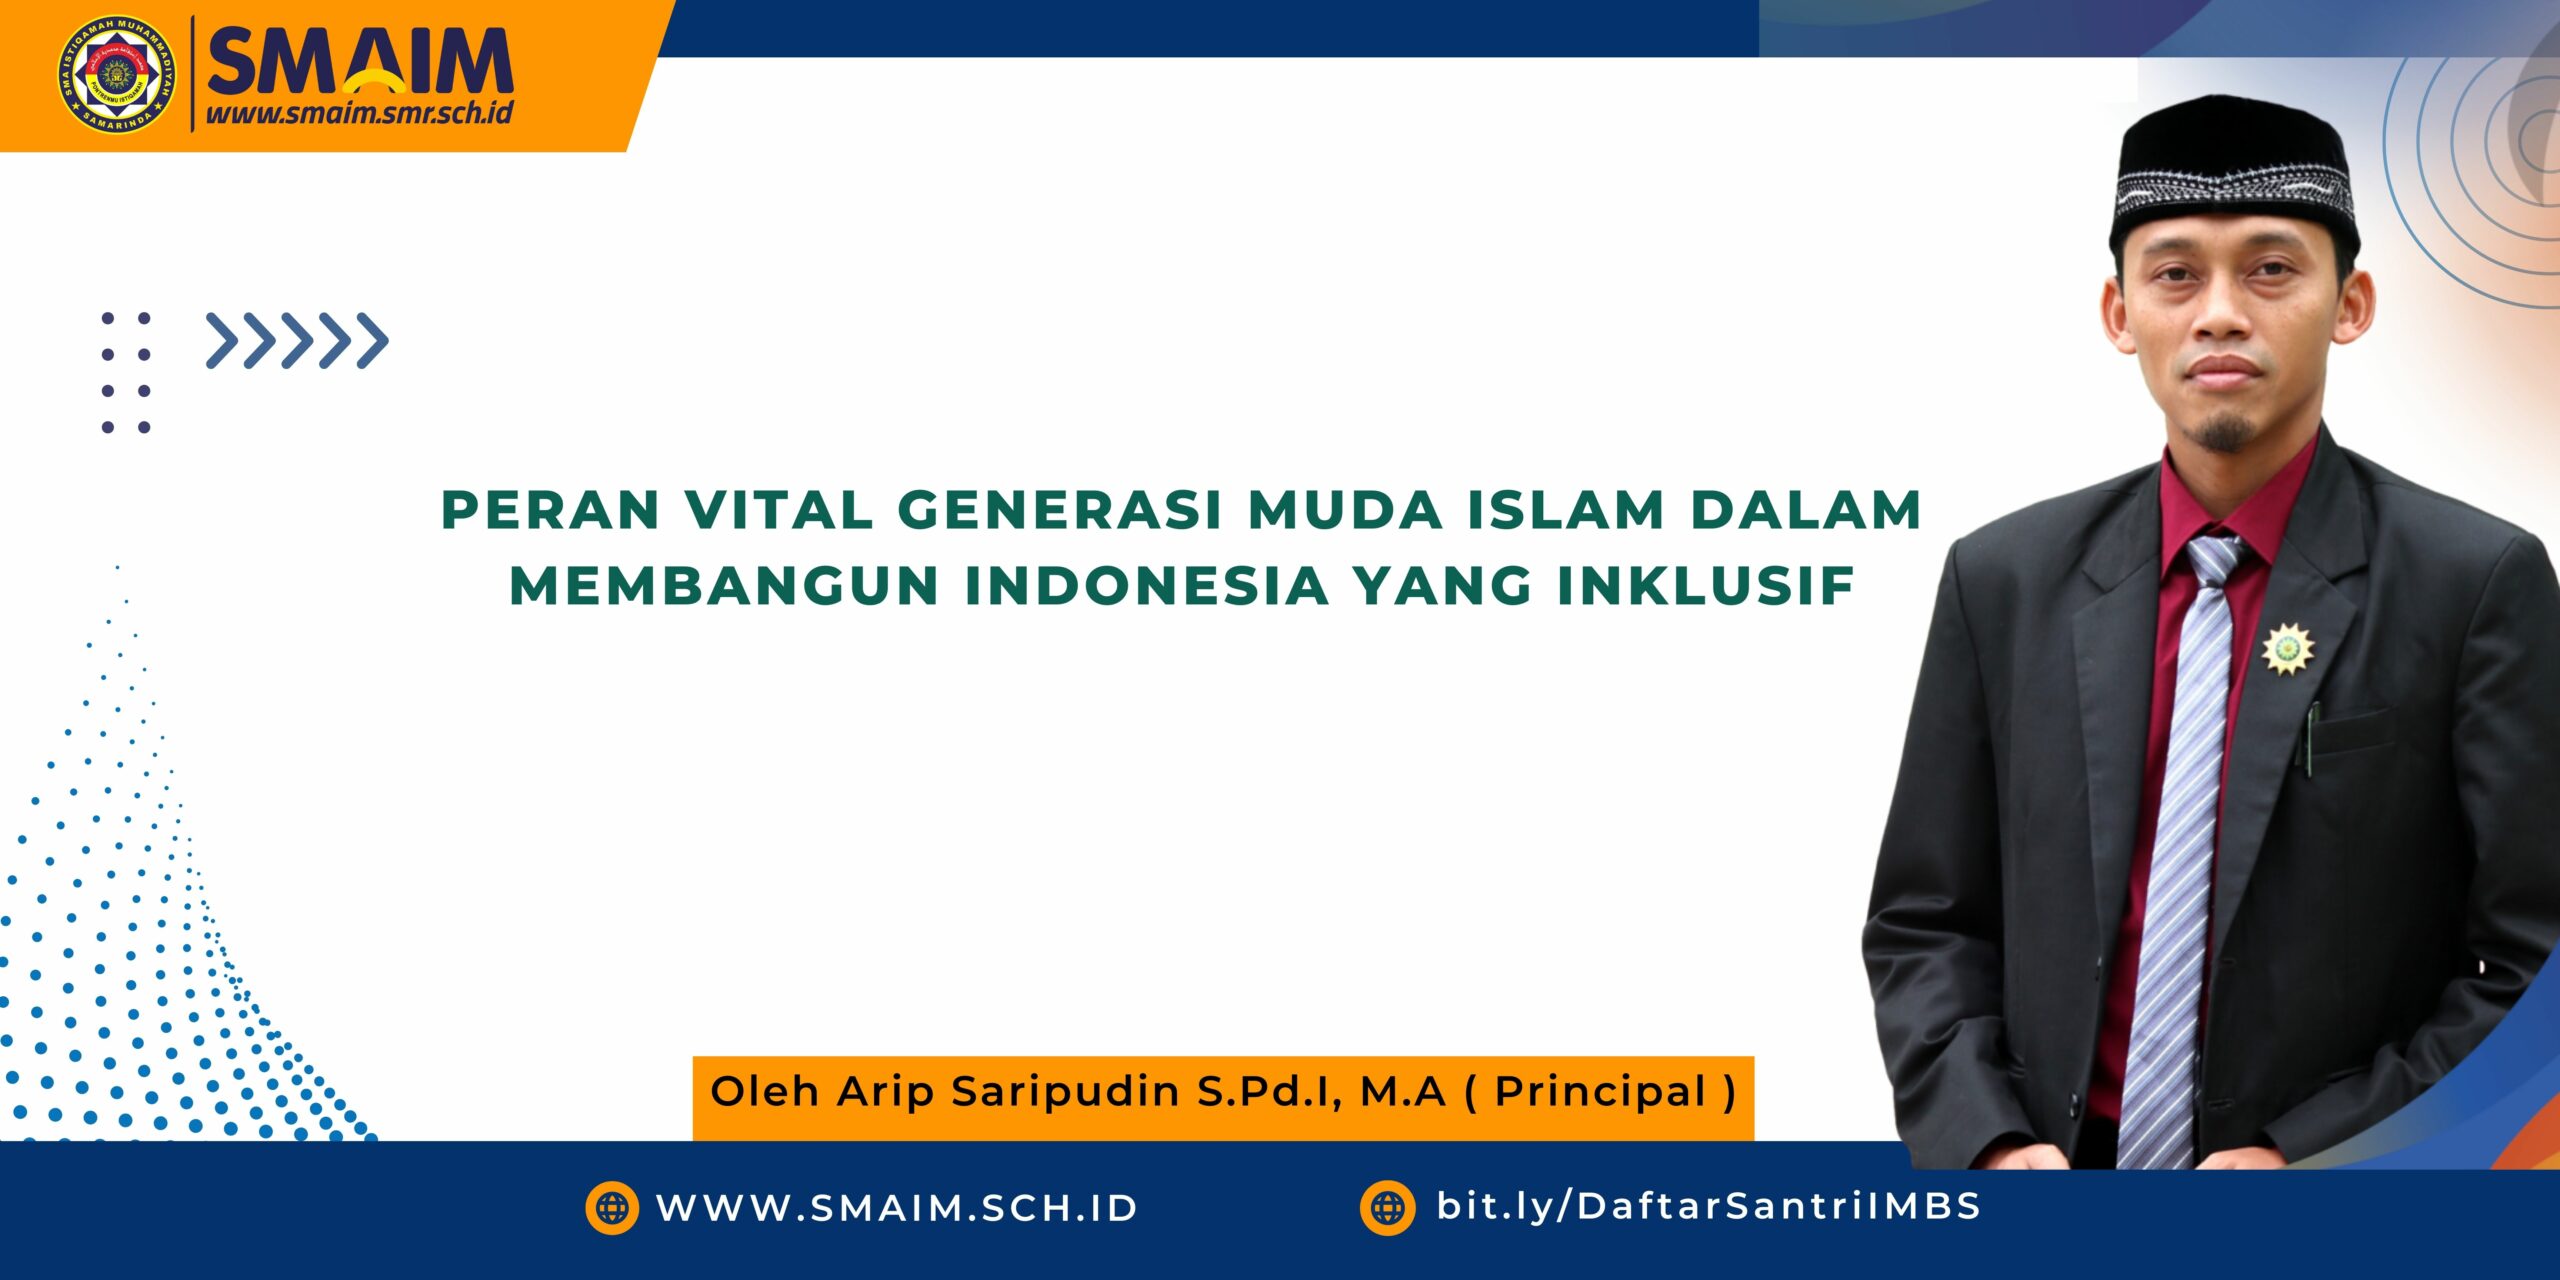 Peran Vital Generasi Muda Islam dalam Membangun Indonesia yang Inklusif